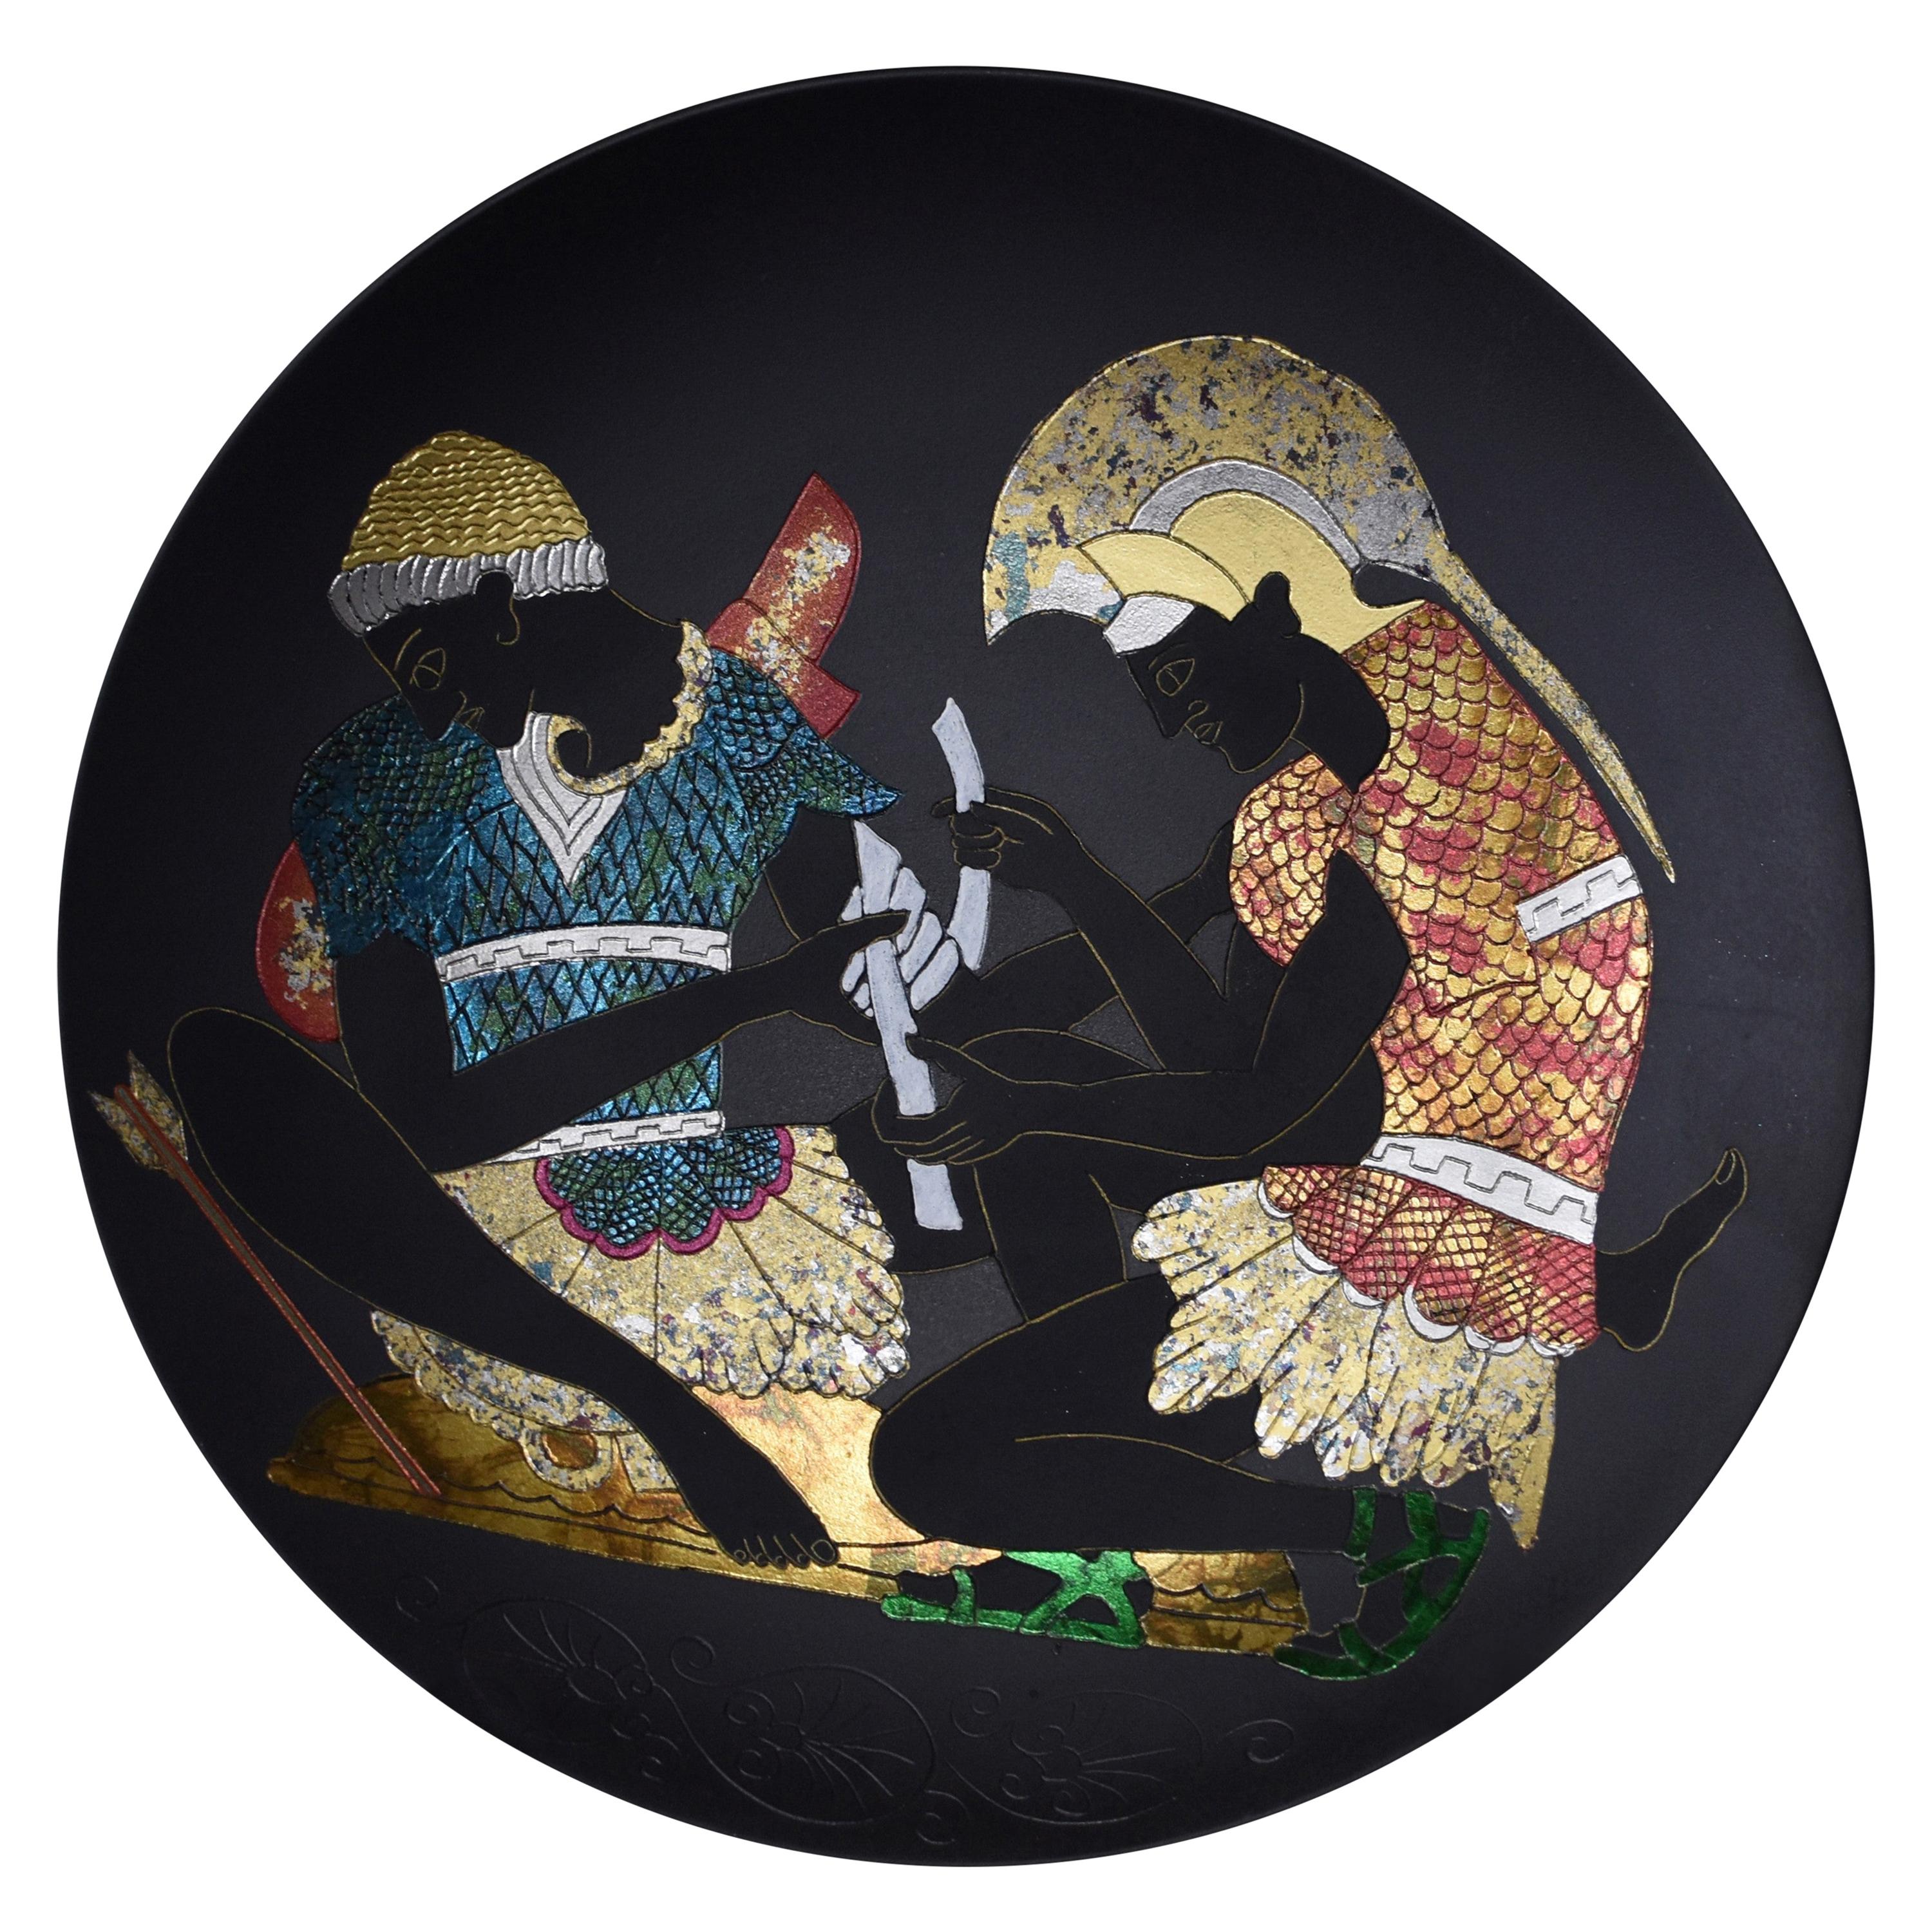 Assiette de présentation japonaise contemporaine en porcelaine noire, rouge, or et platine de l'artiste